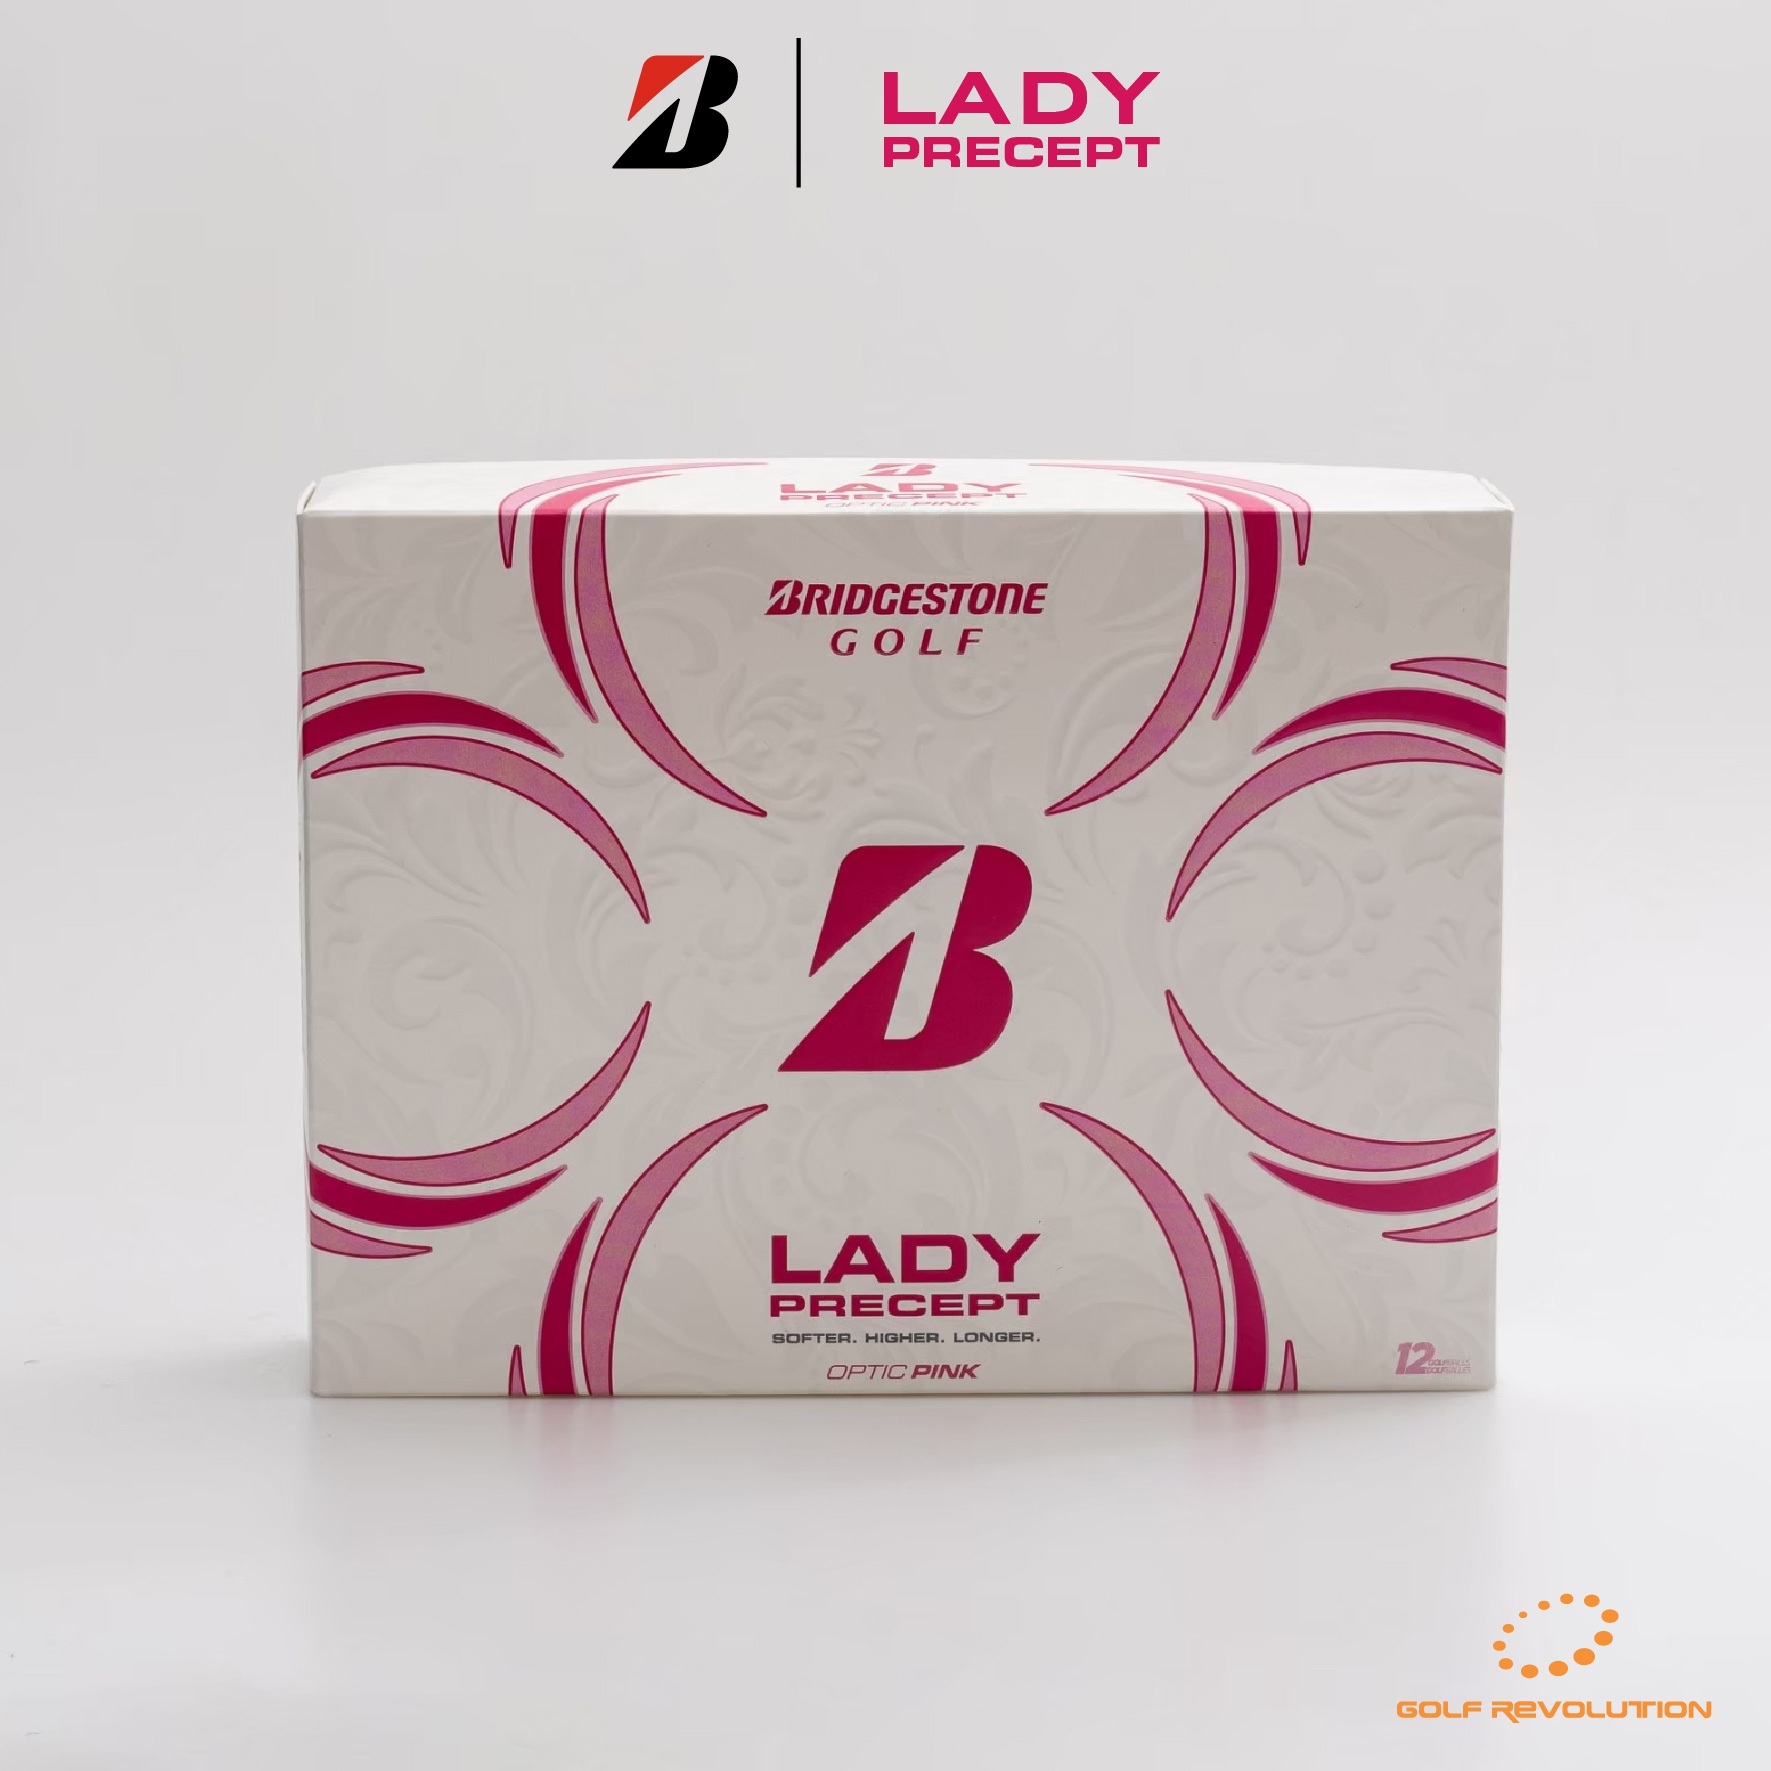 ลูกกอล์ฟ Bridgestone Golf - Lady Precept Pink ซื้อ 2 แถม 1, Price: 890 THB/dz  (Promotion : Buy2, Free1)